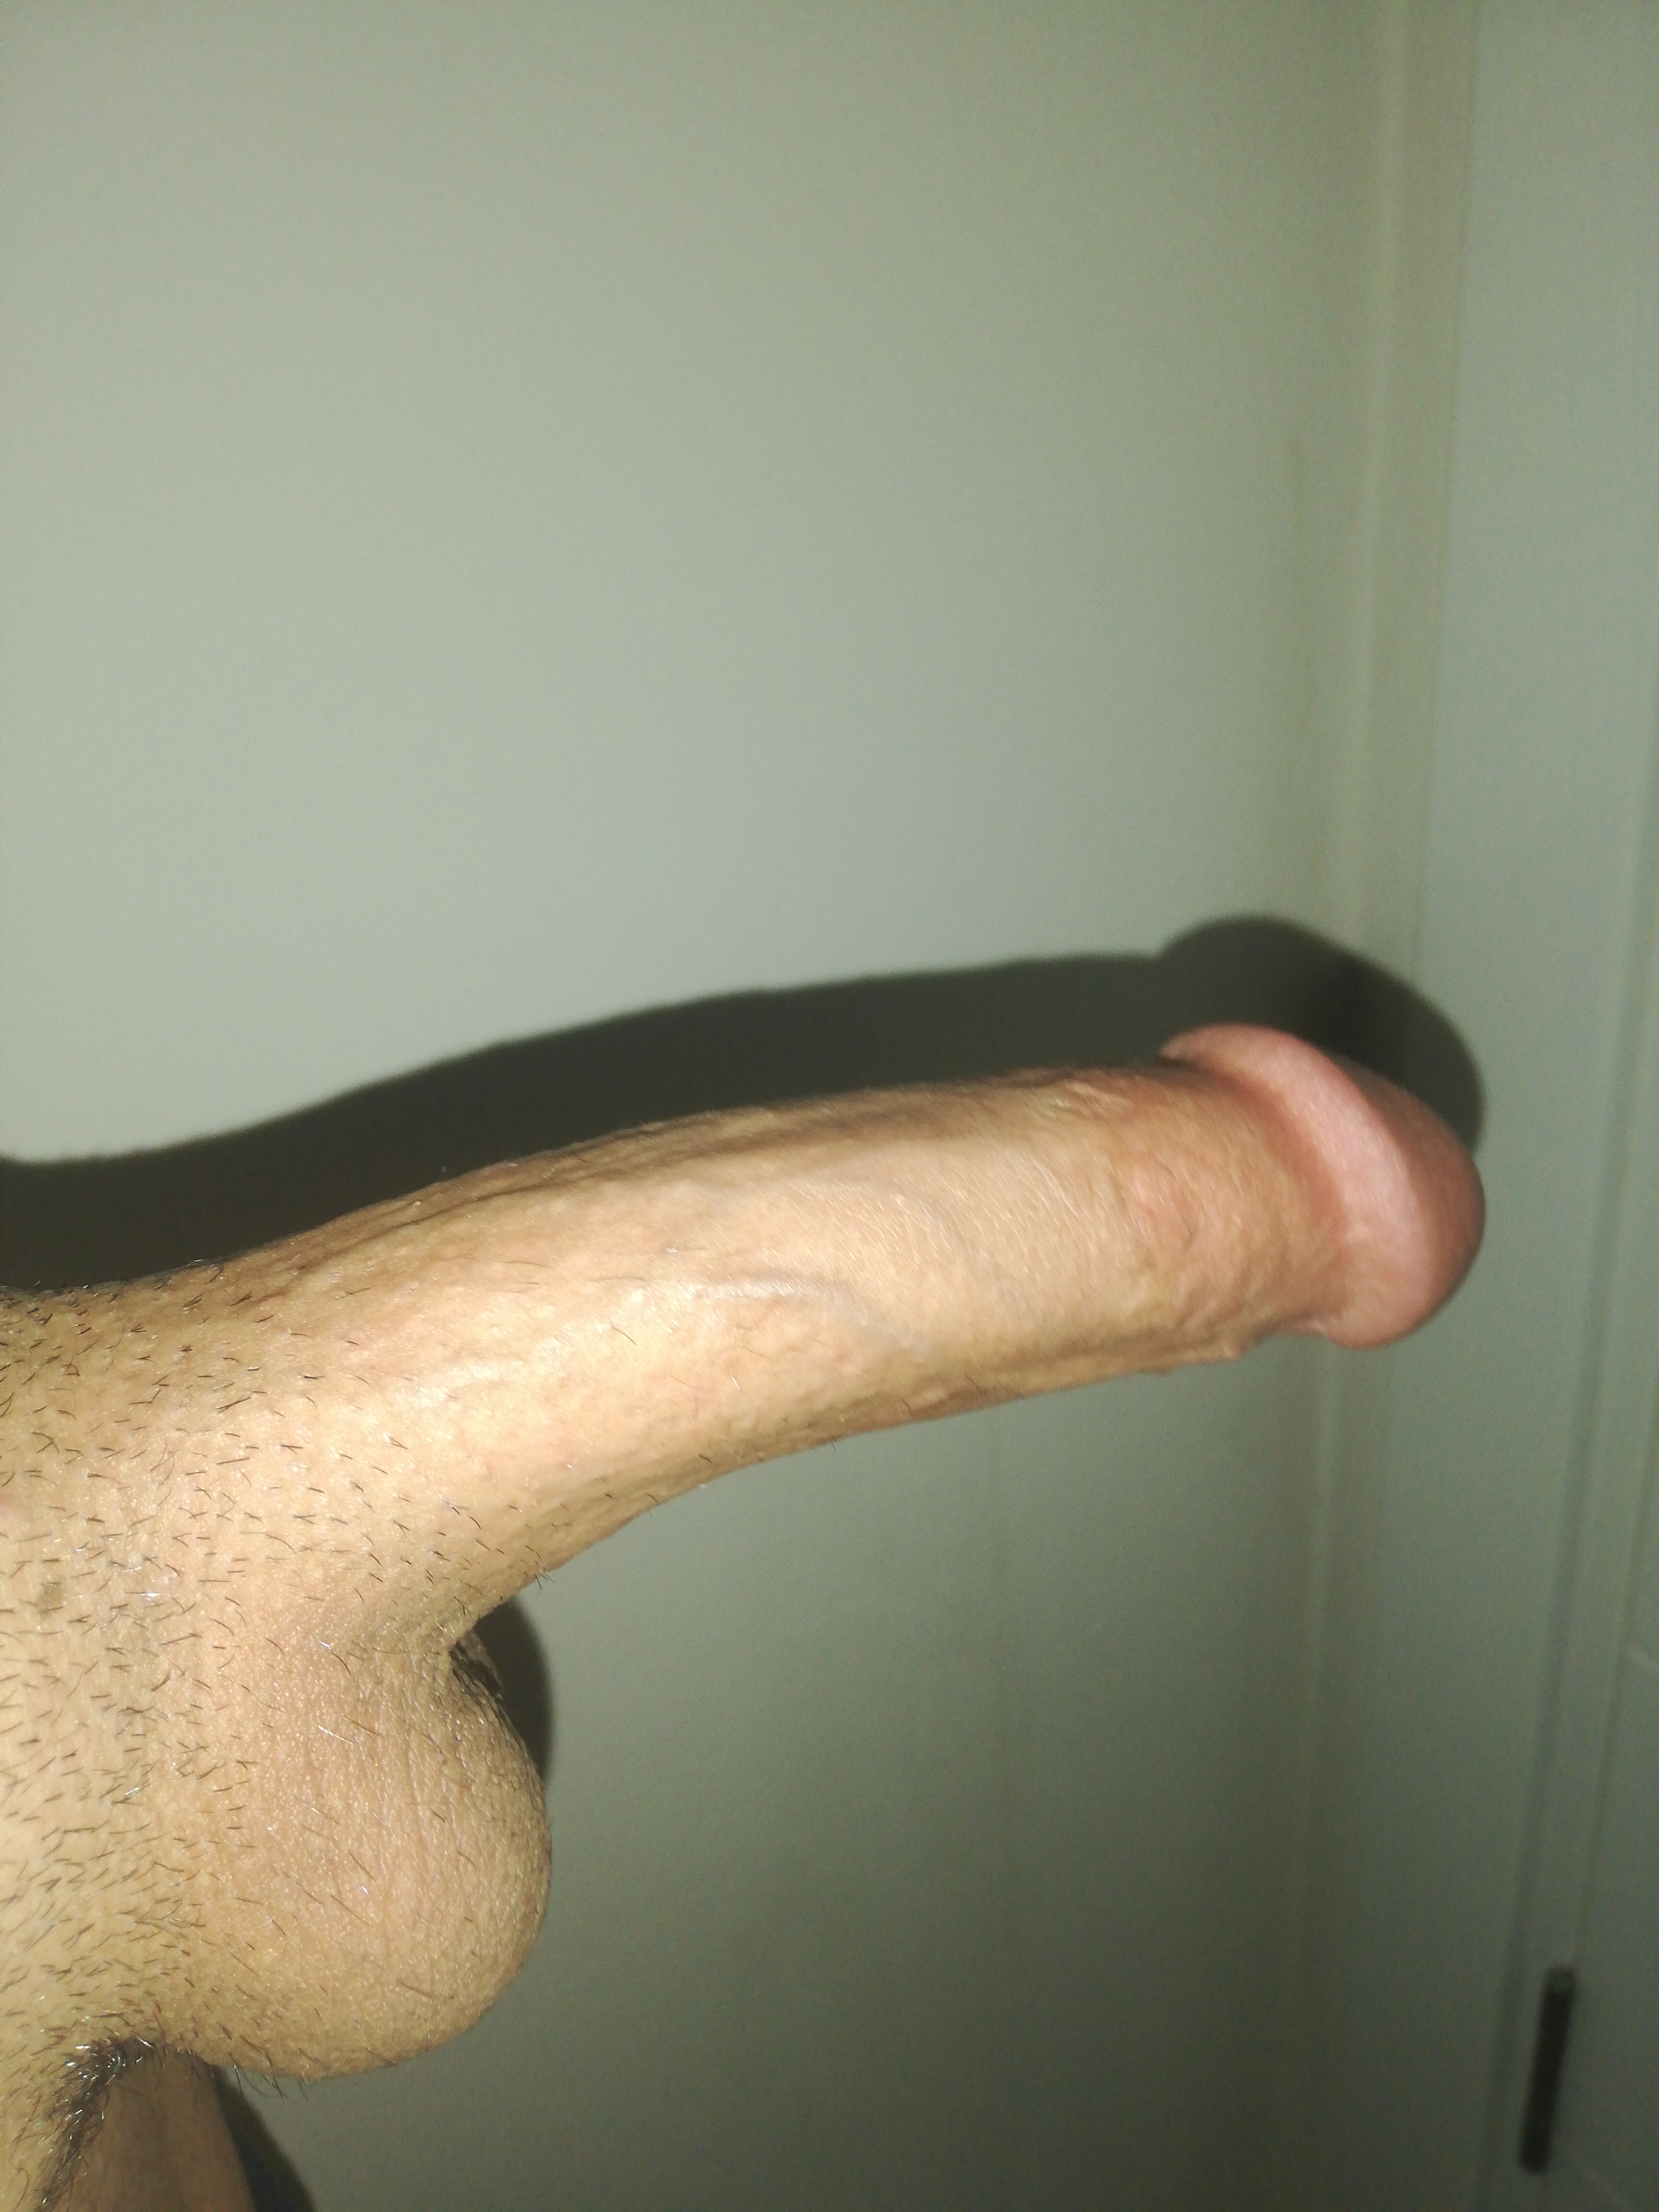 my 16cm cock